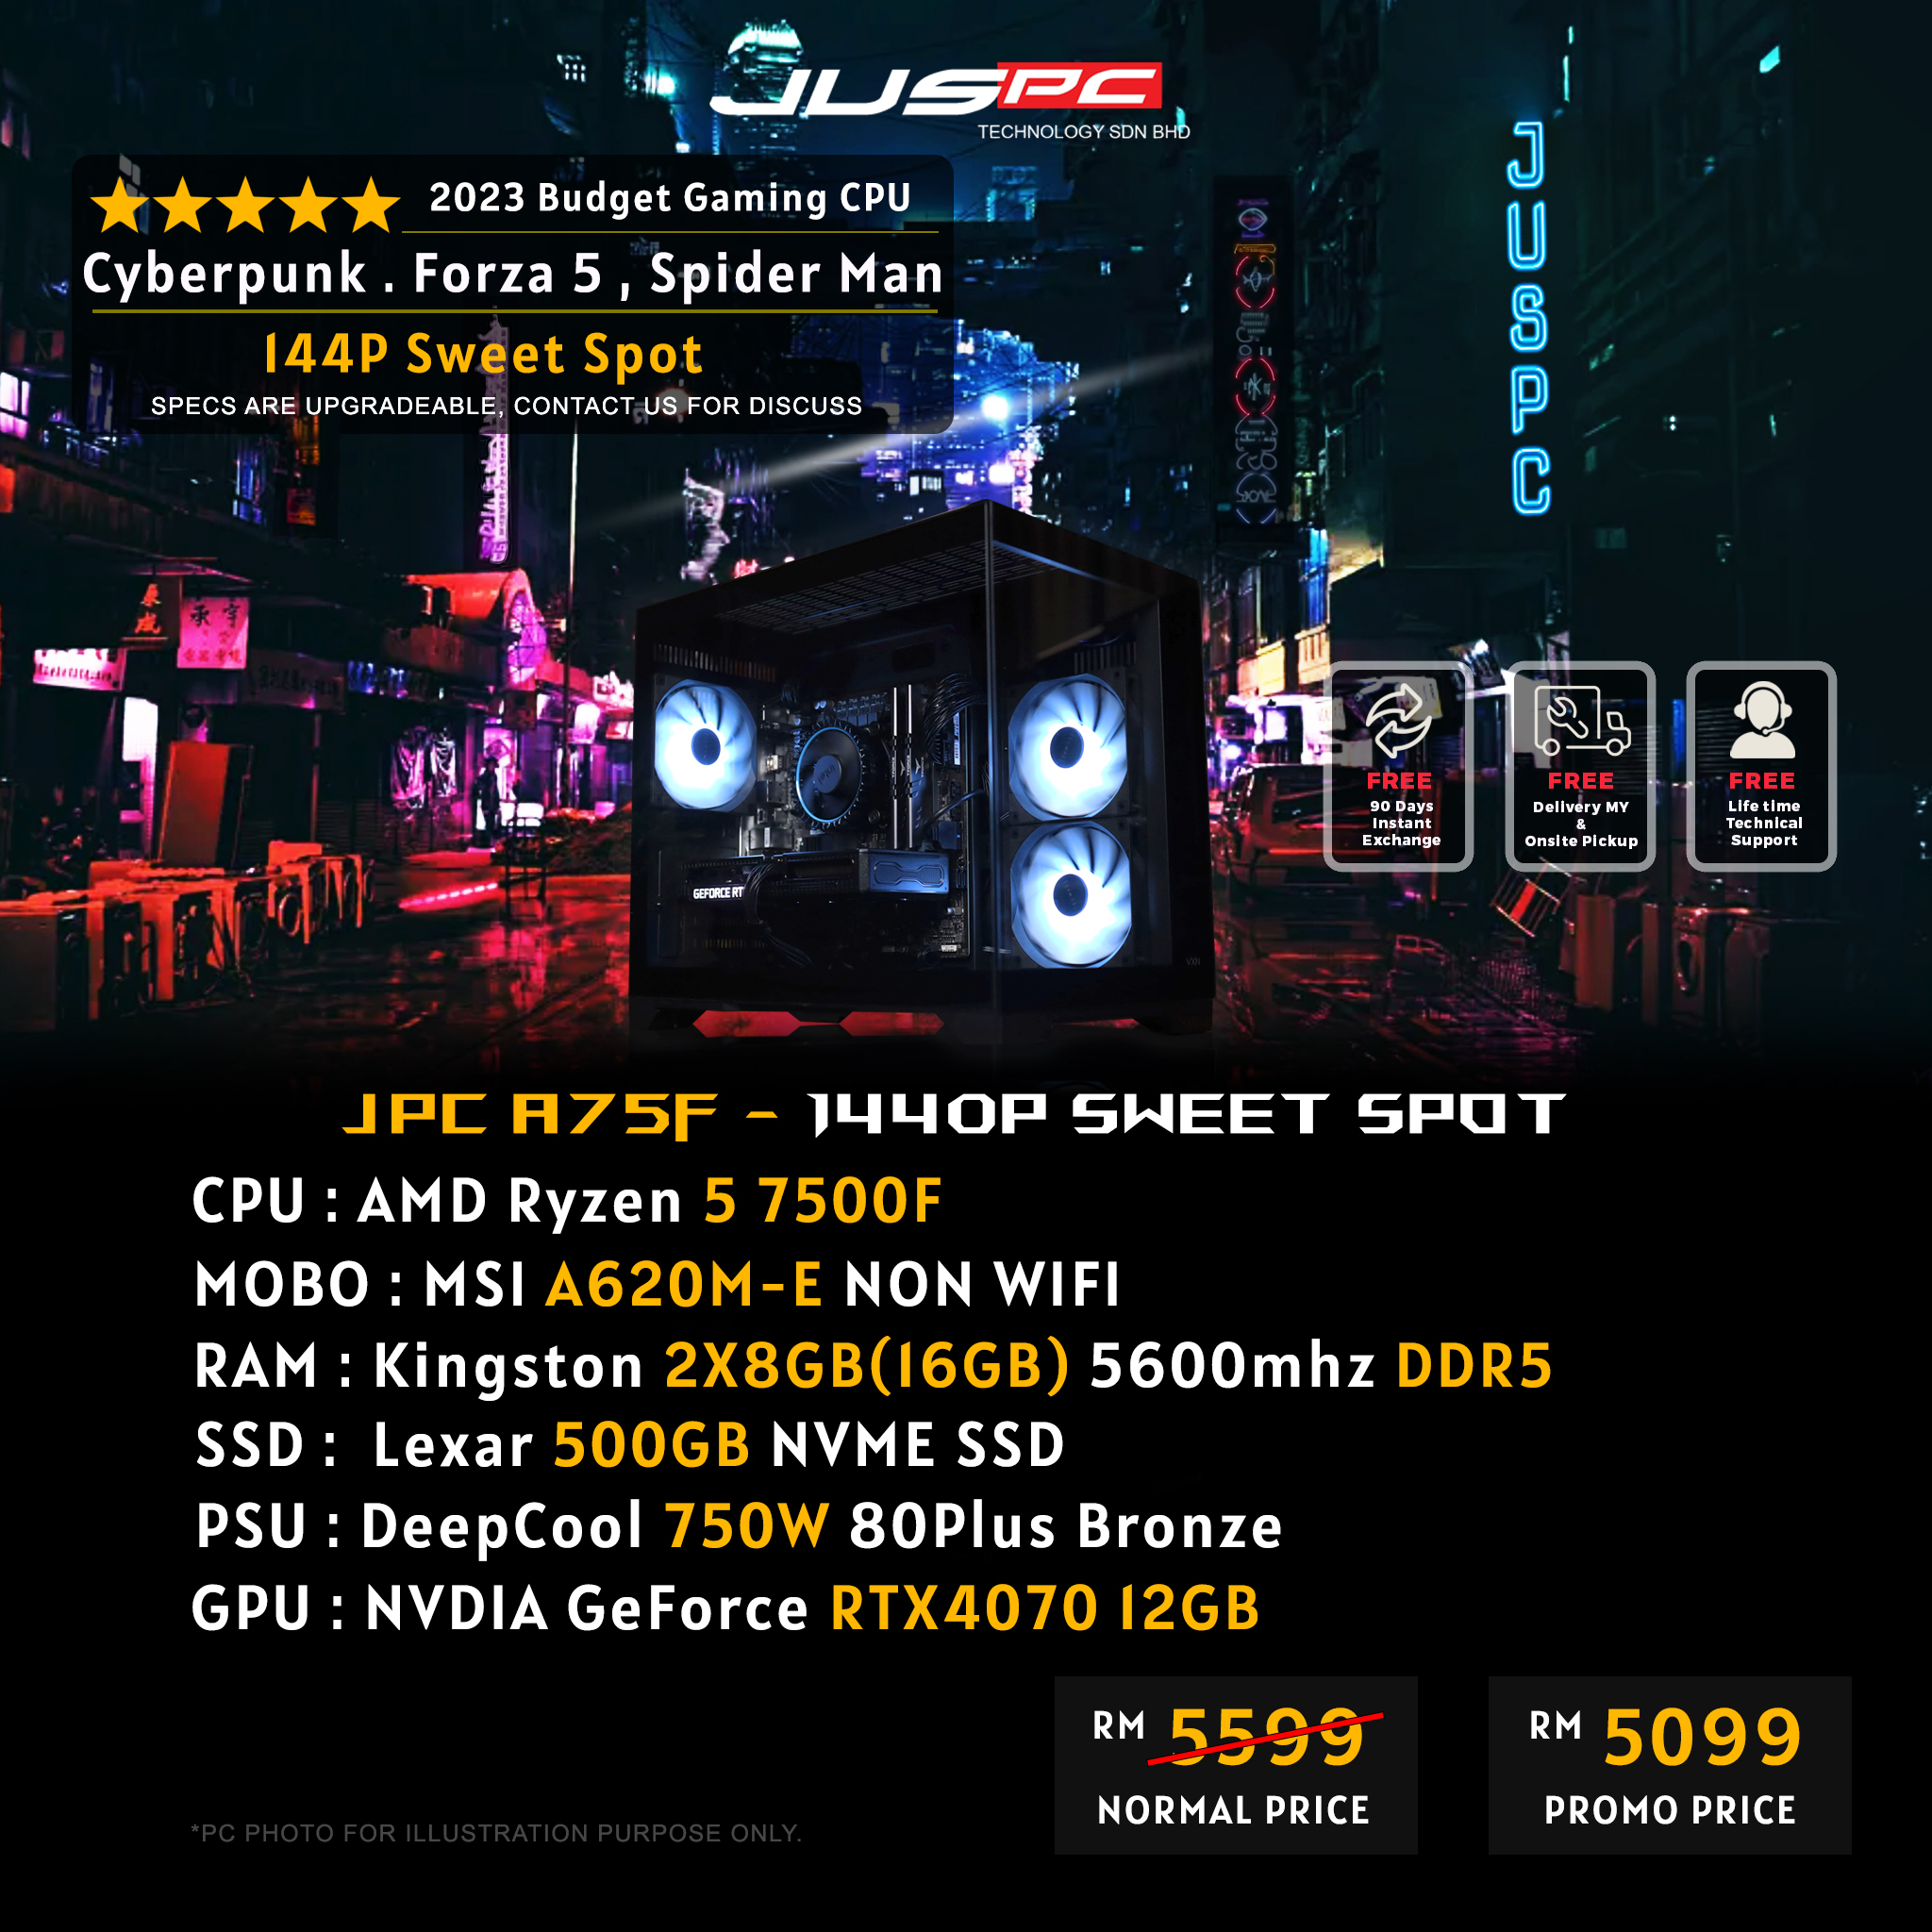 AMD-RM5099